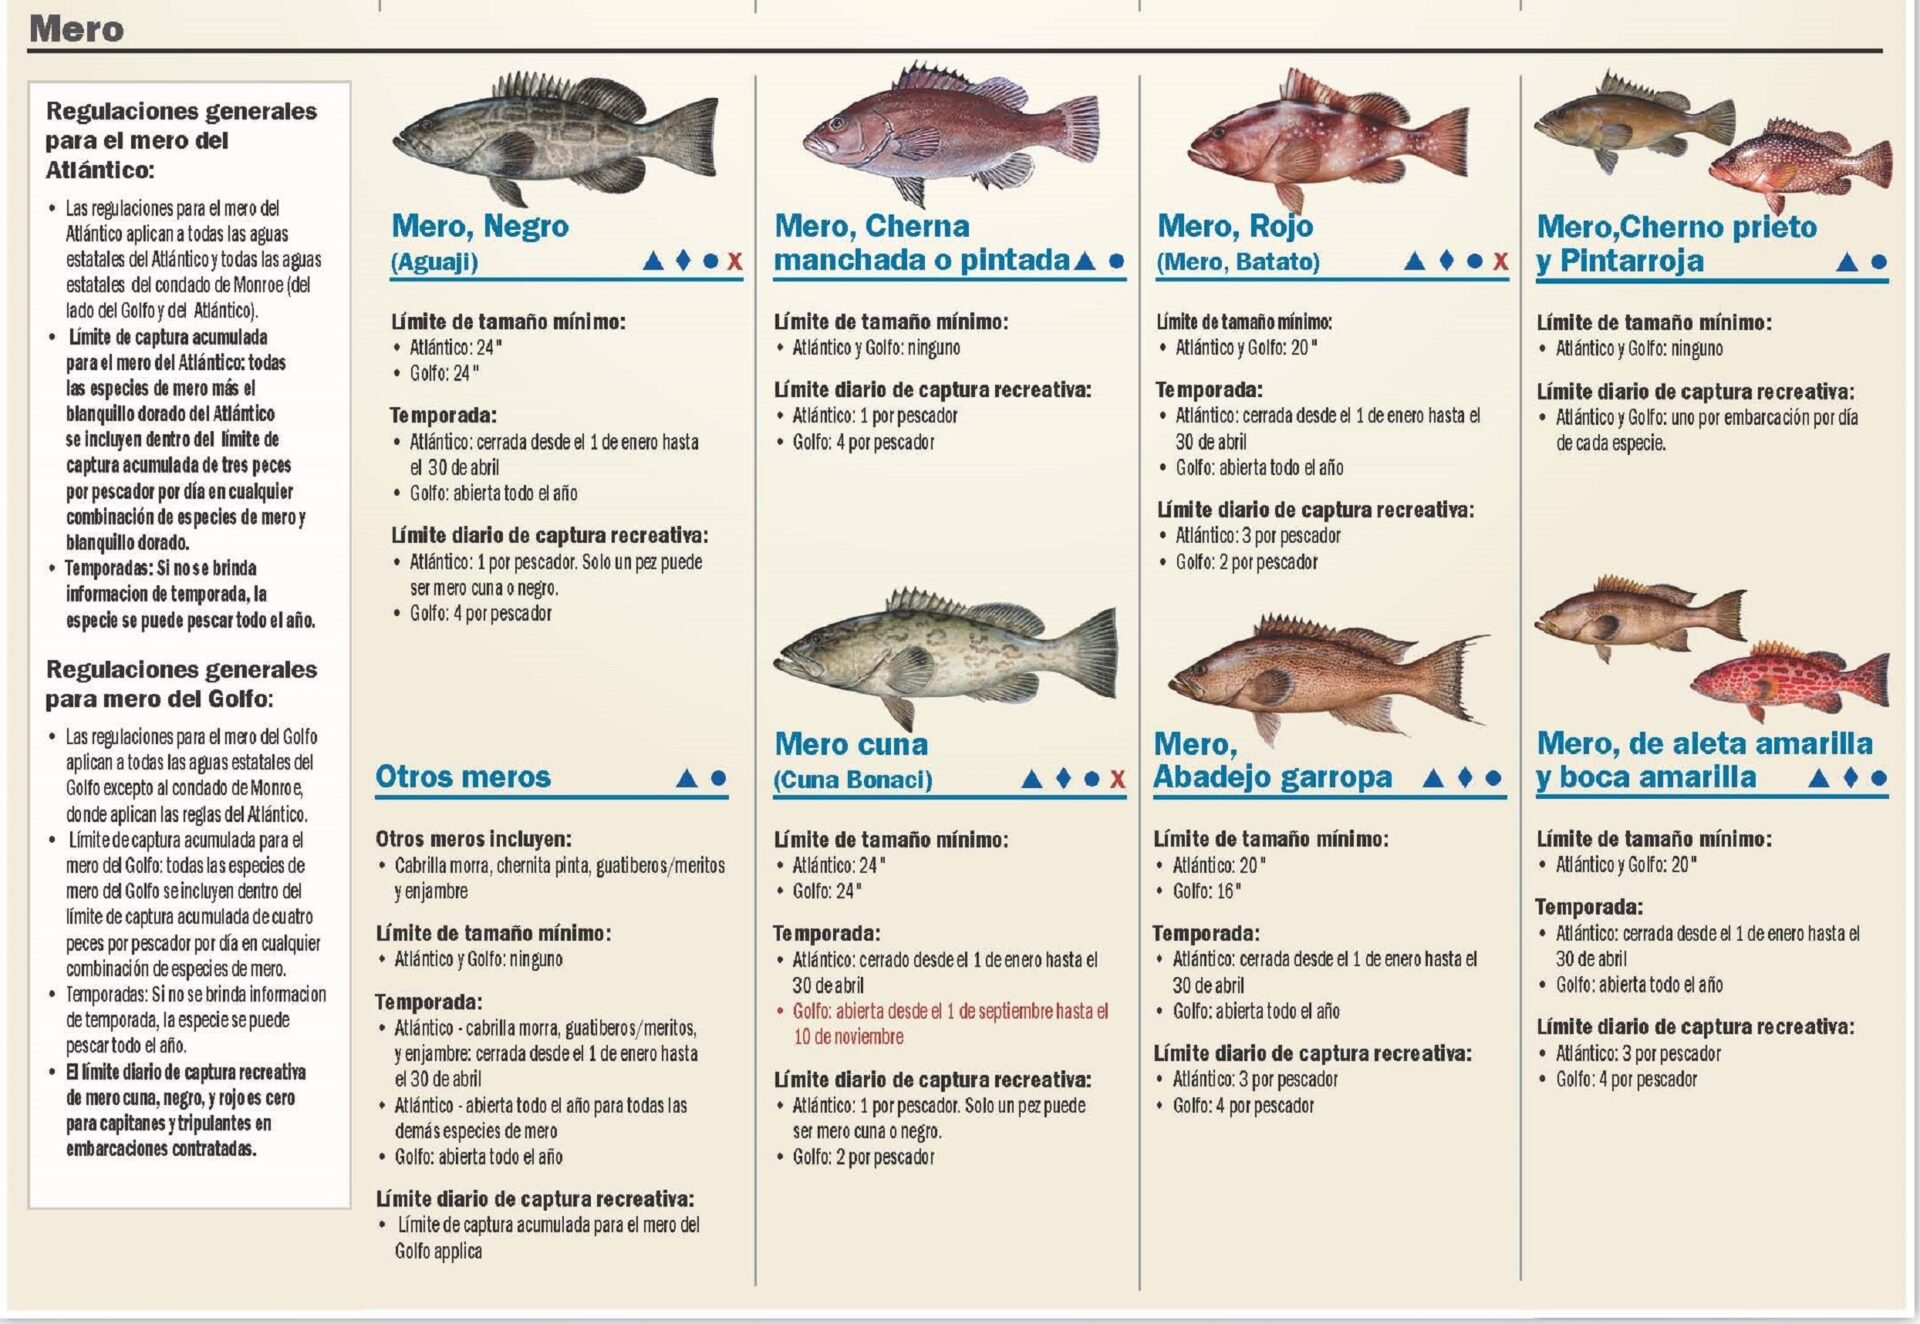 Regulaciones de pescas en la Florida mero cherna grouper